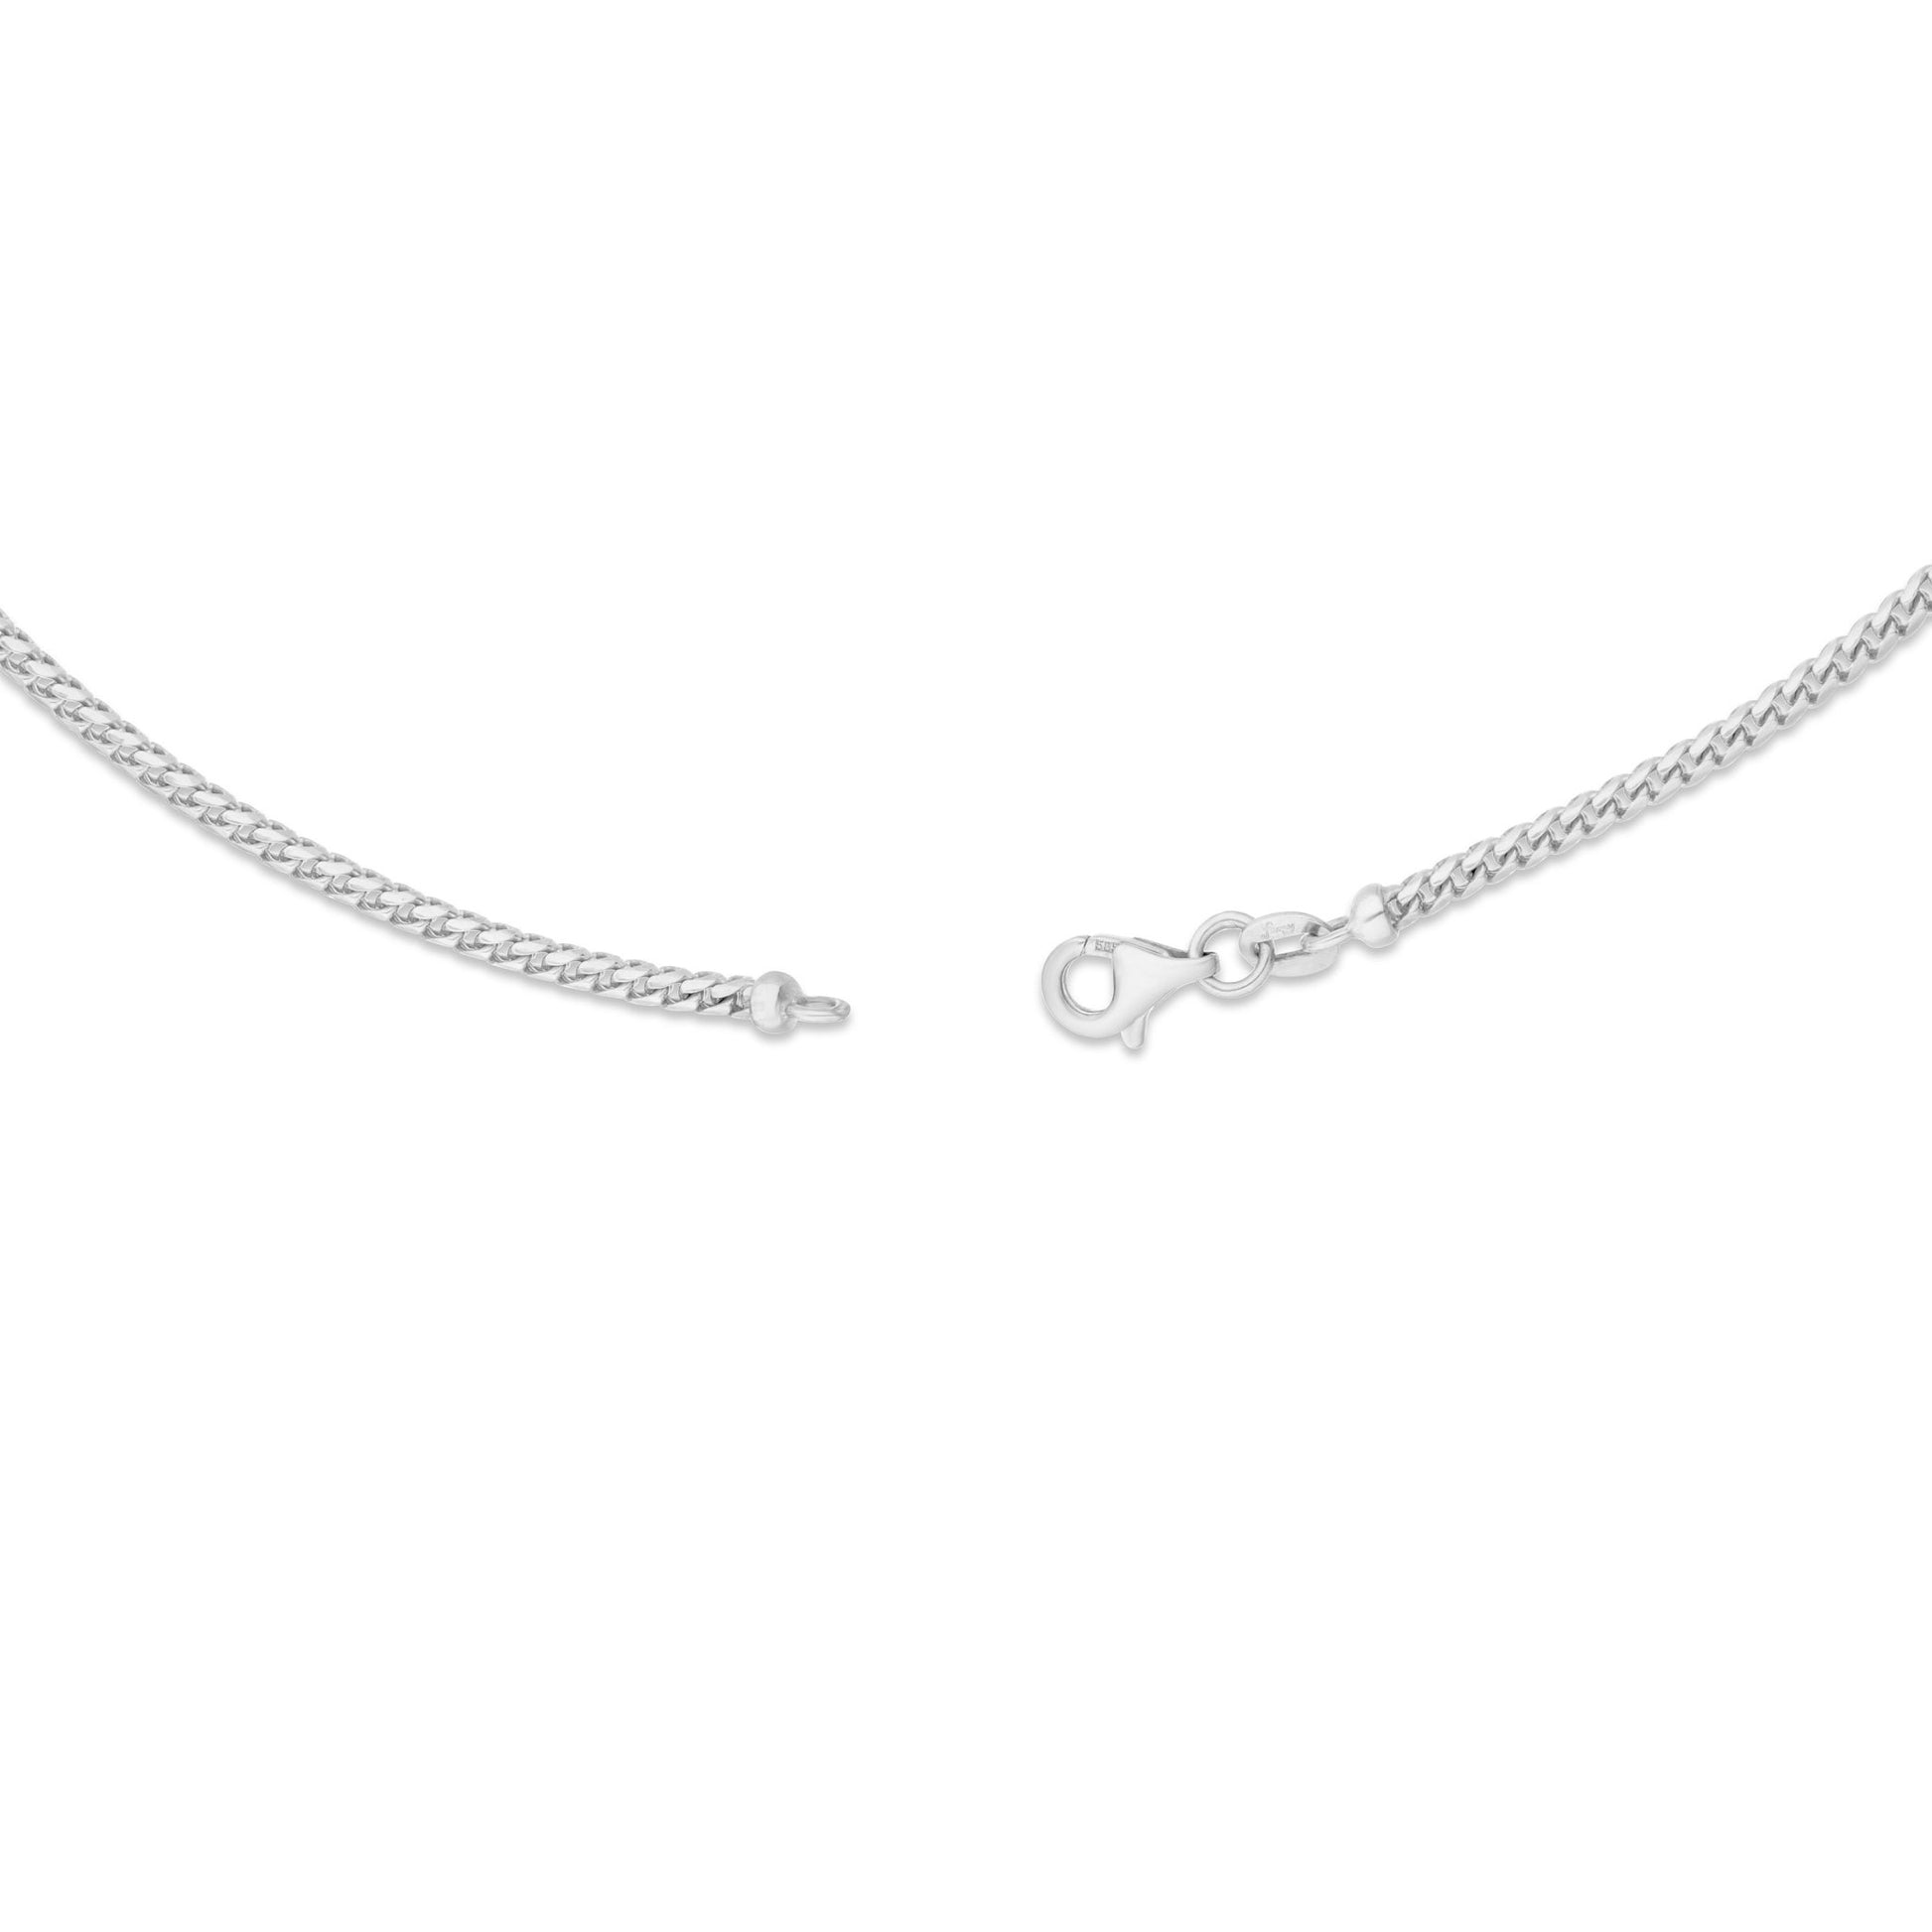 Gold Franco Chain, 2 mm - Shyne Jewelers 10K White Gold 16 Shyne Jewelers